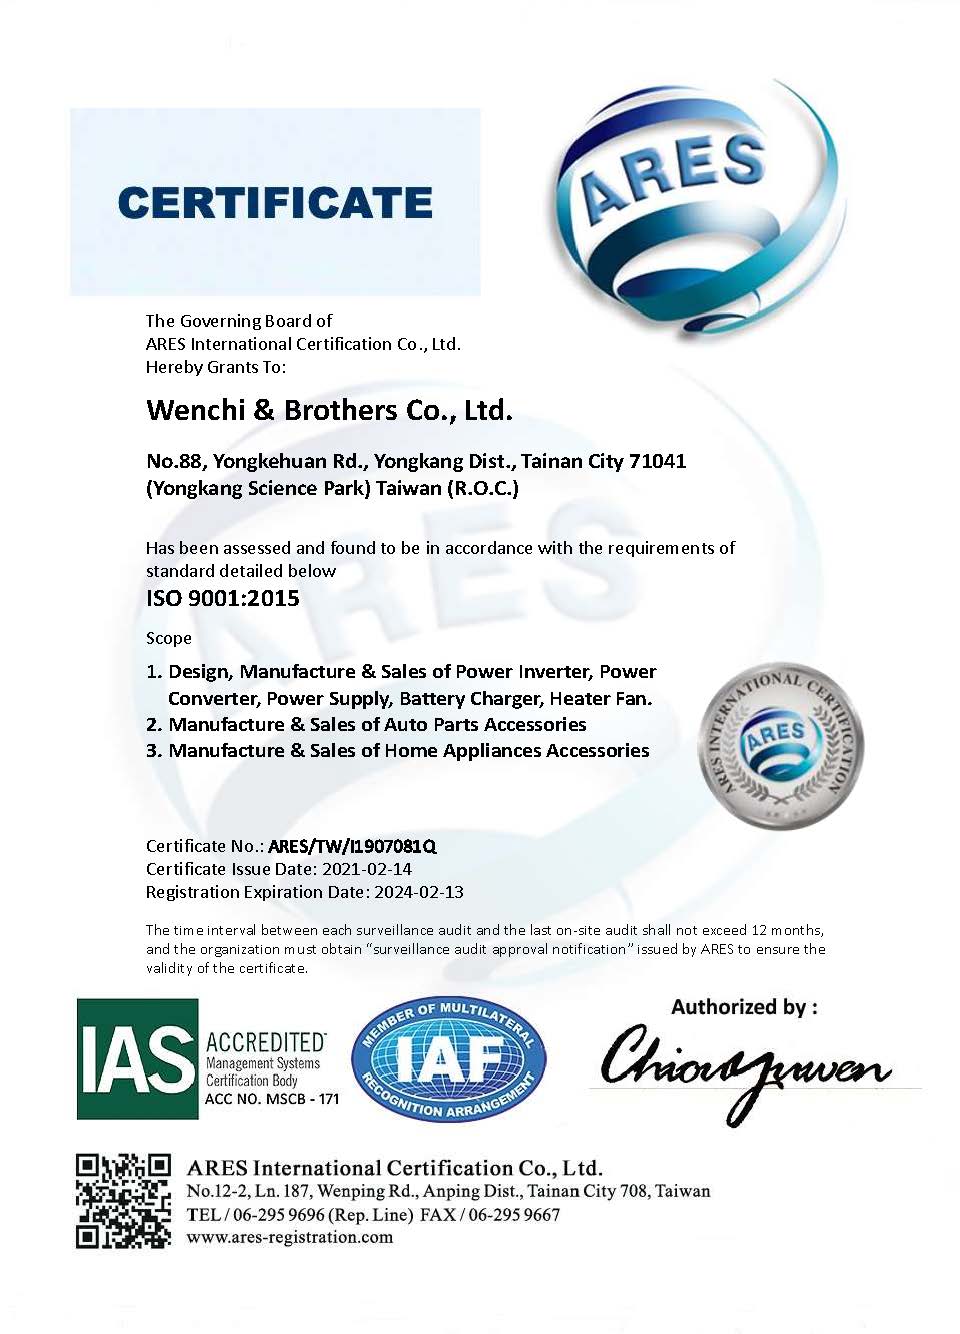 Wenchi& Brothers ist ein professioneller Hersteller und Exporteur von DC-AC- Wechselrichtern, DC-DC-Wandlern, Batterieladegeräten,Batterietester ,  Autoteile, Embleme, Logos, Auto-Außen- und Innenteile